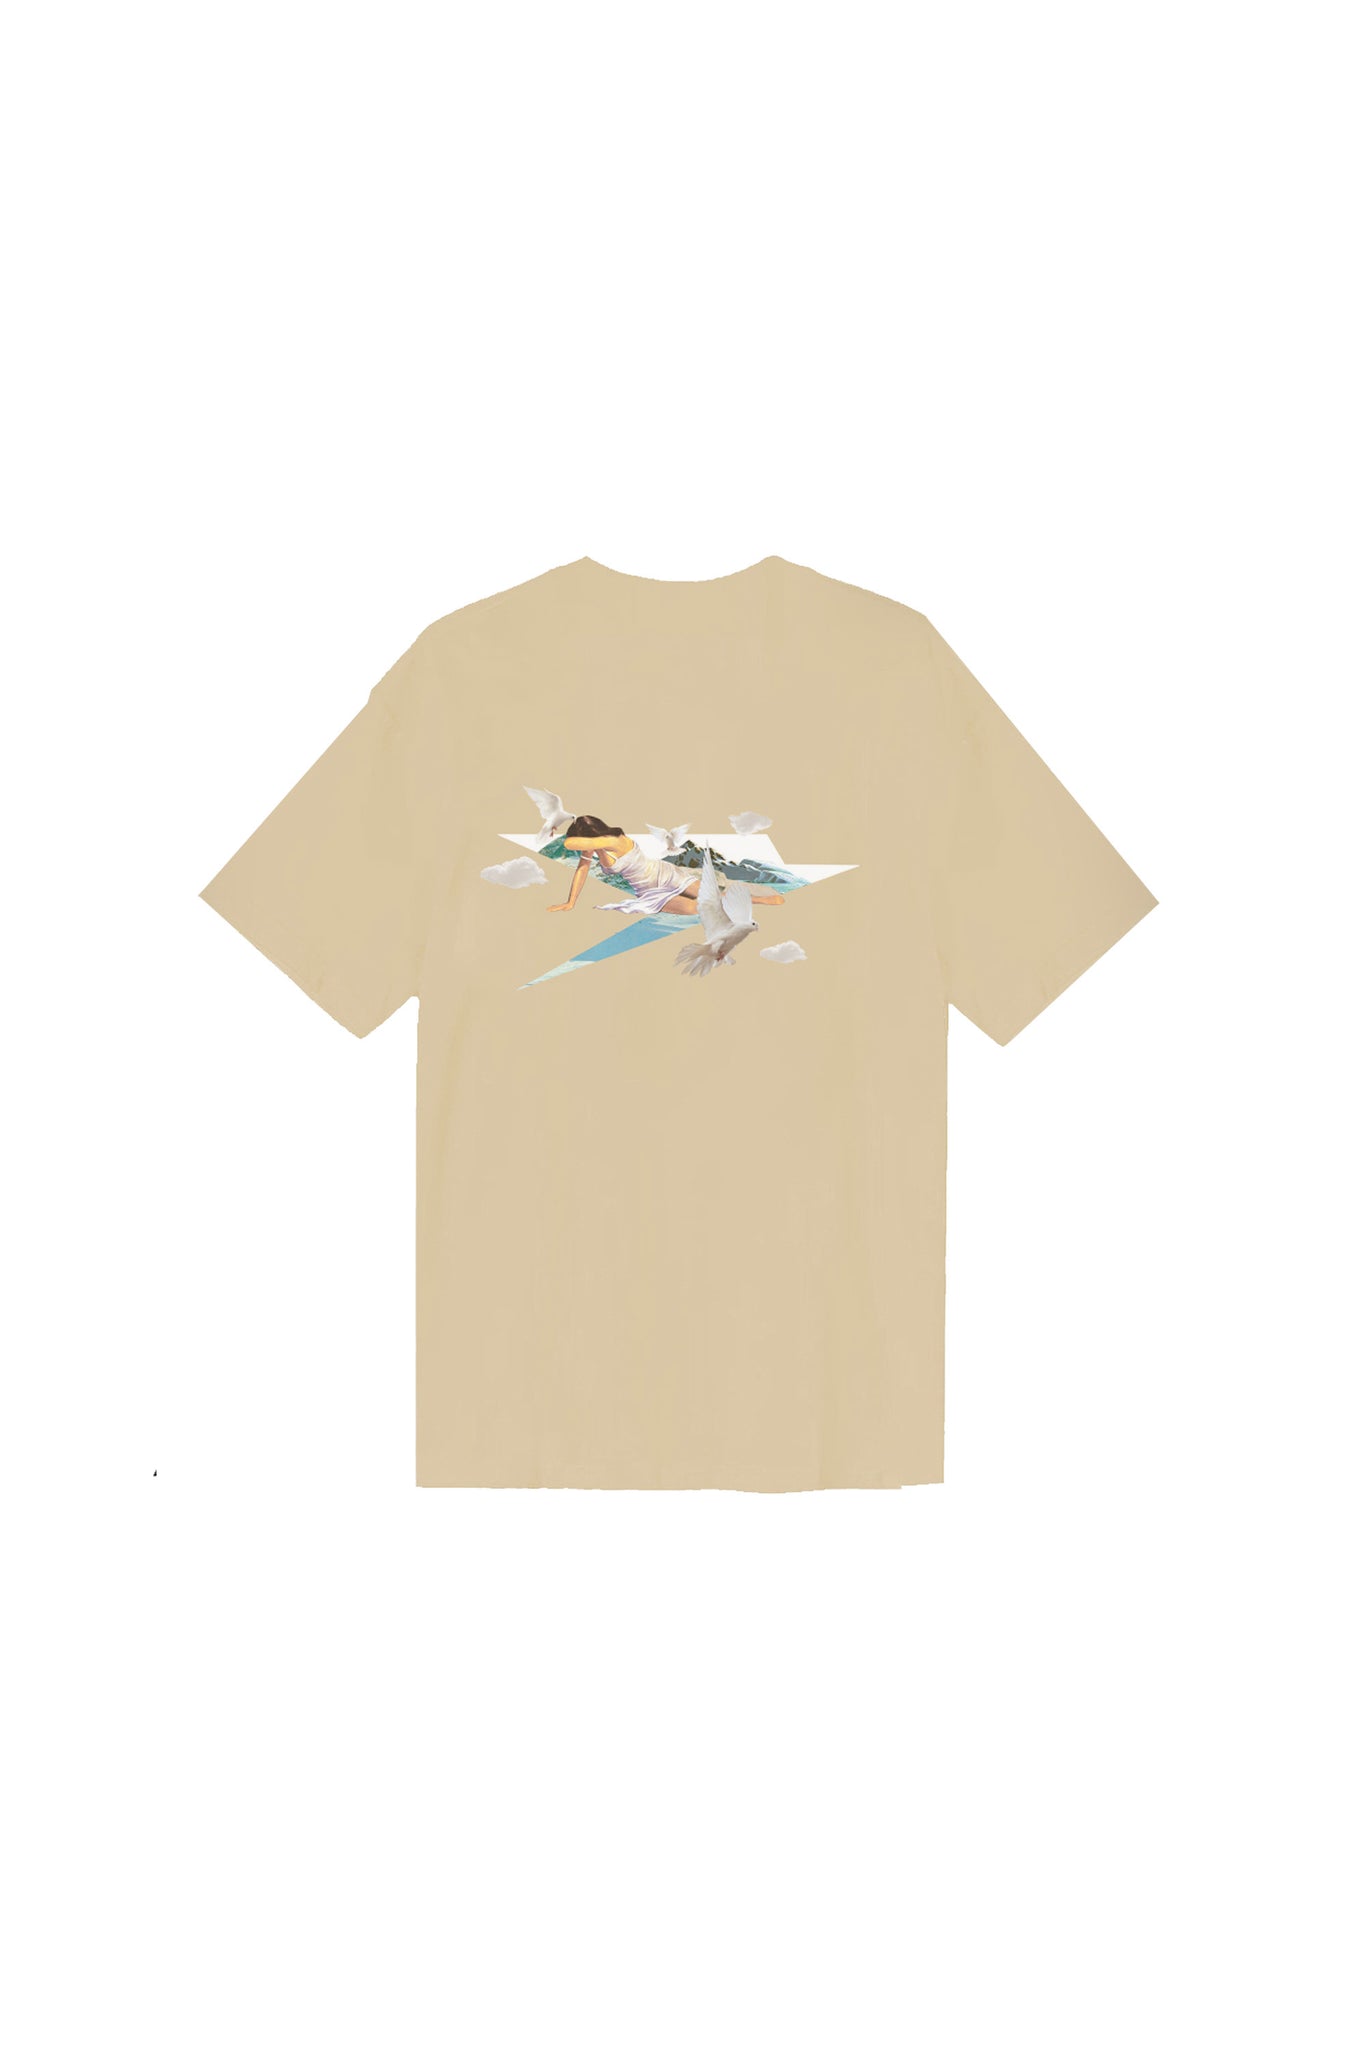 “DYSTOPIA” AI Cream T-Shirt